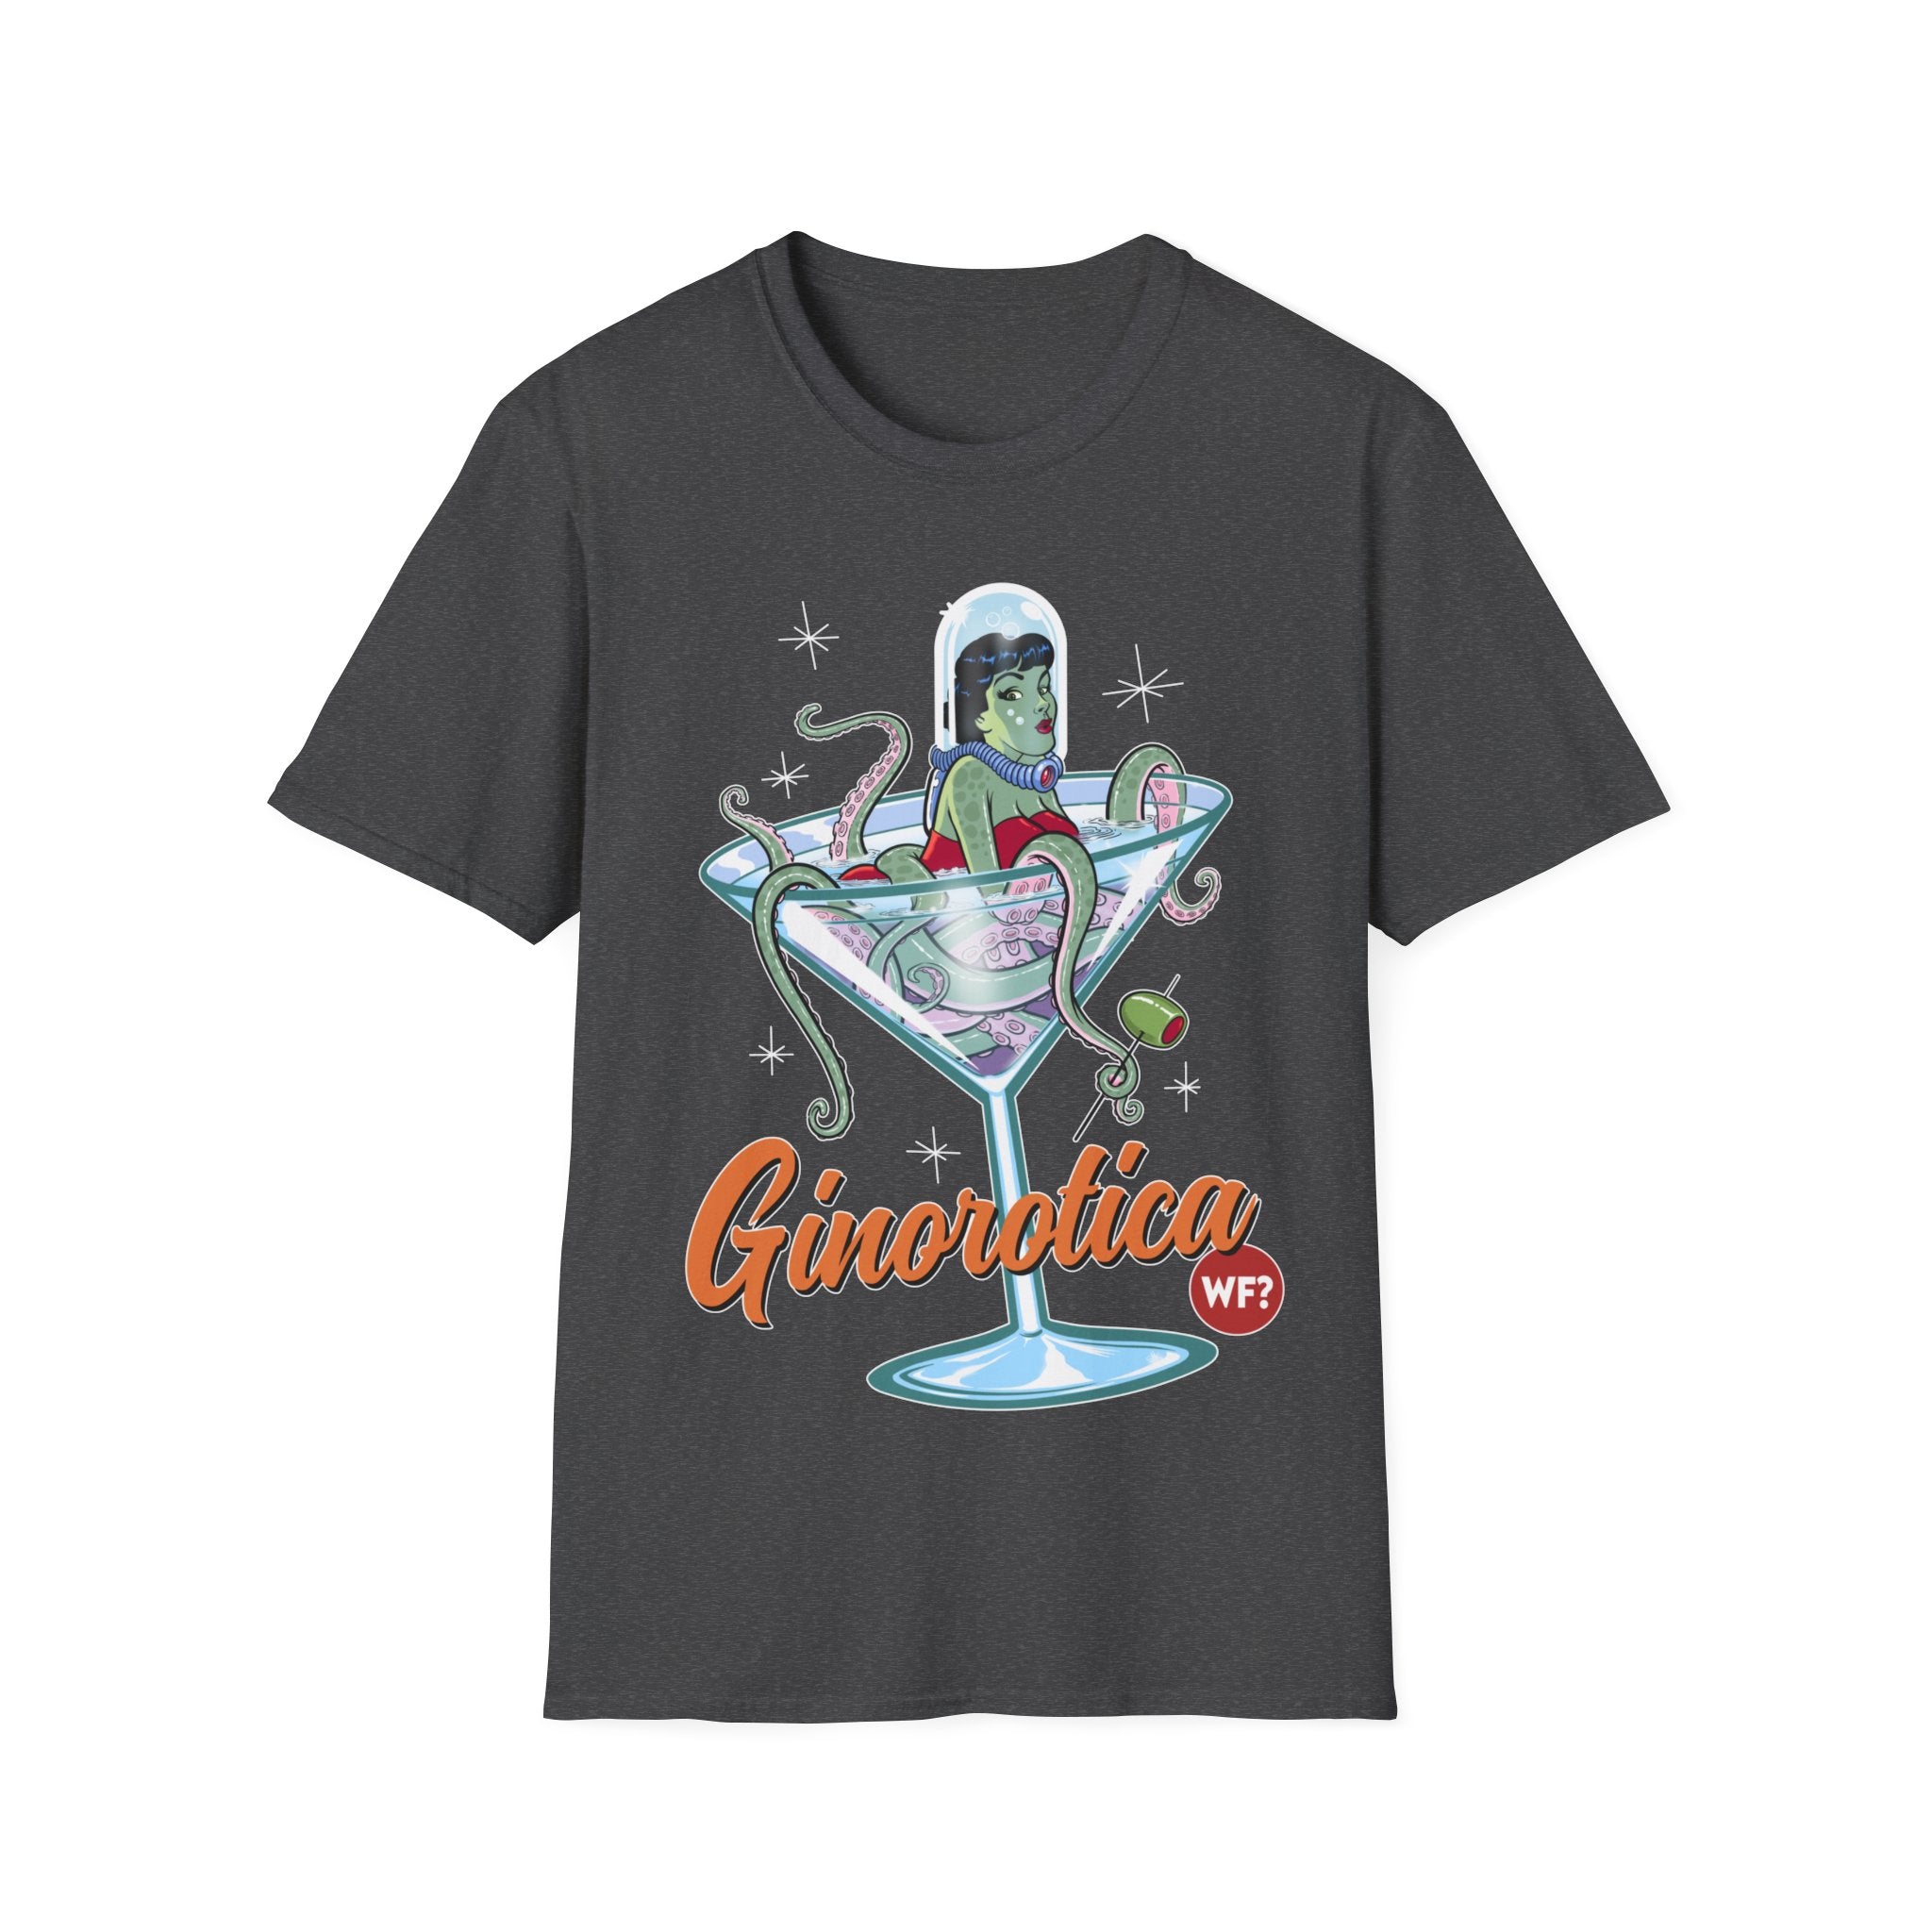 Buy dark-heather Ginorotica Unisex T-Shirt